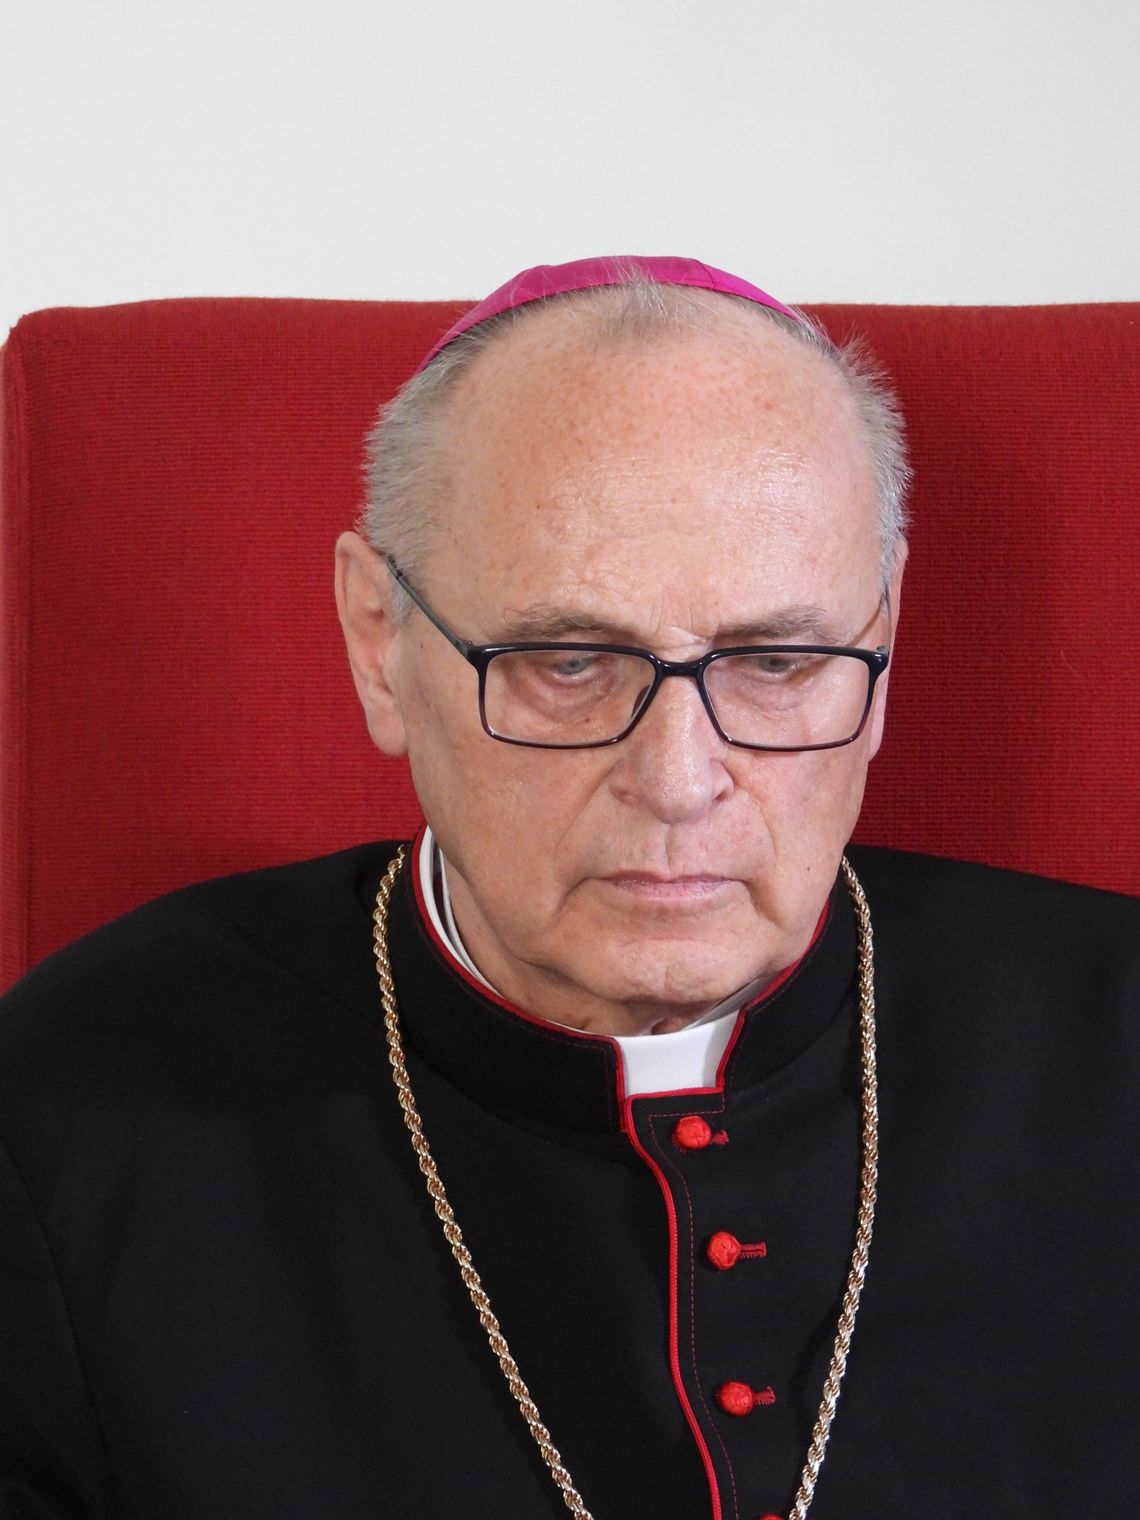 Biskup Wiesław Mering złożył rezygnację z pełnionego urzędu